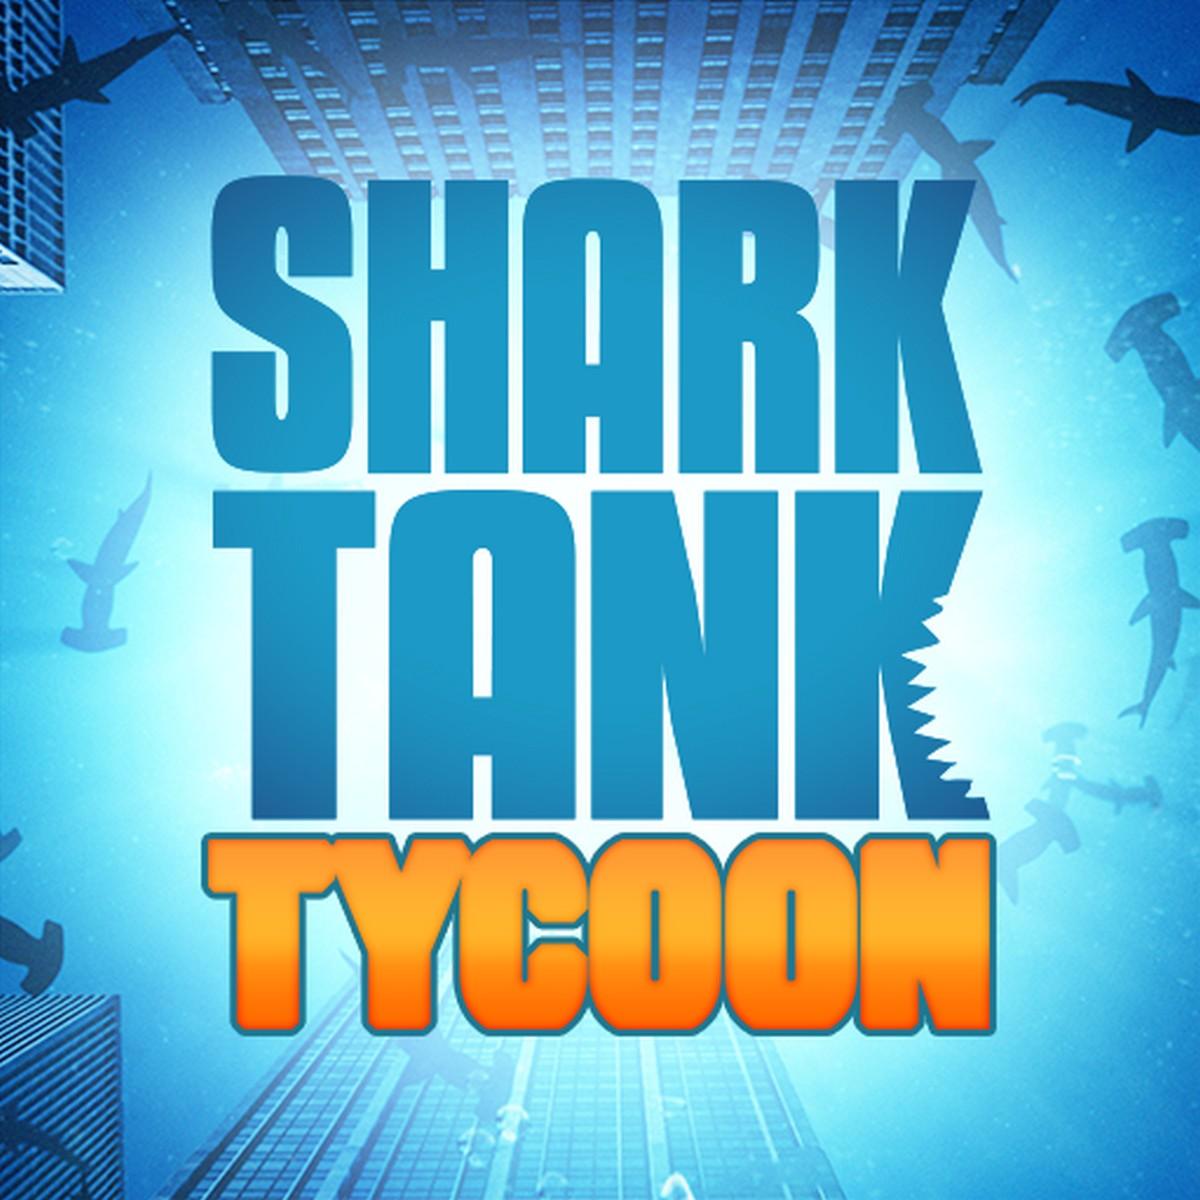 Shark Tank Tycoon APK MOD v1.17 (Todo ilimitado)